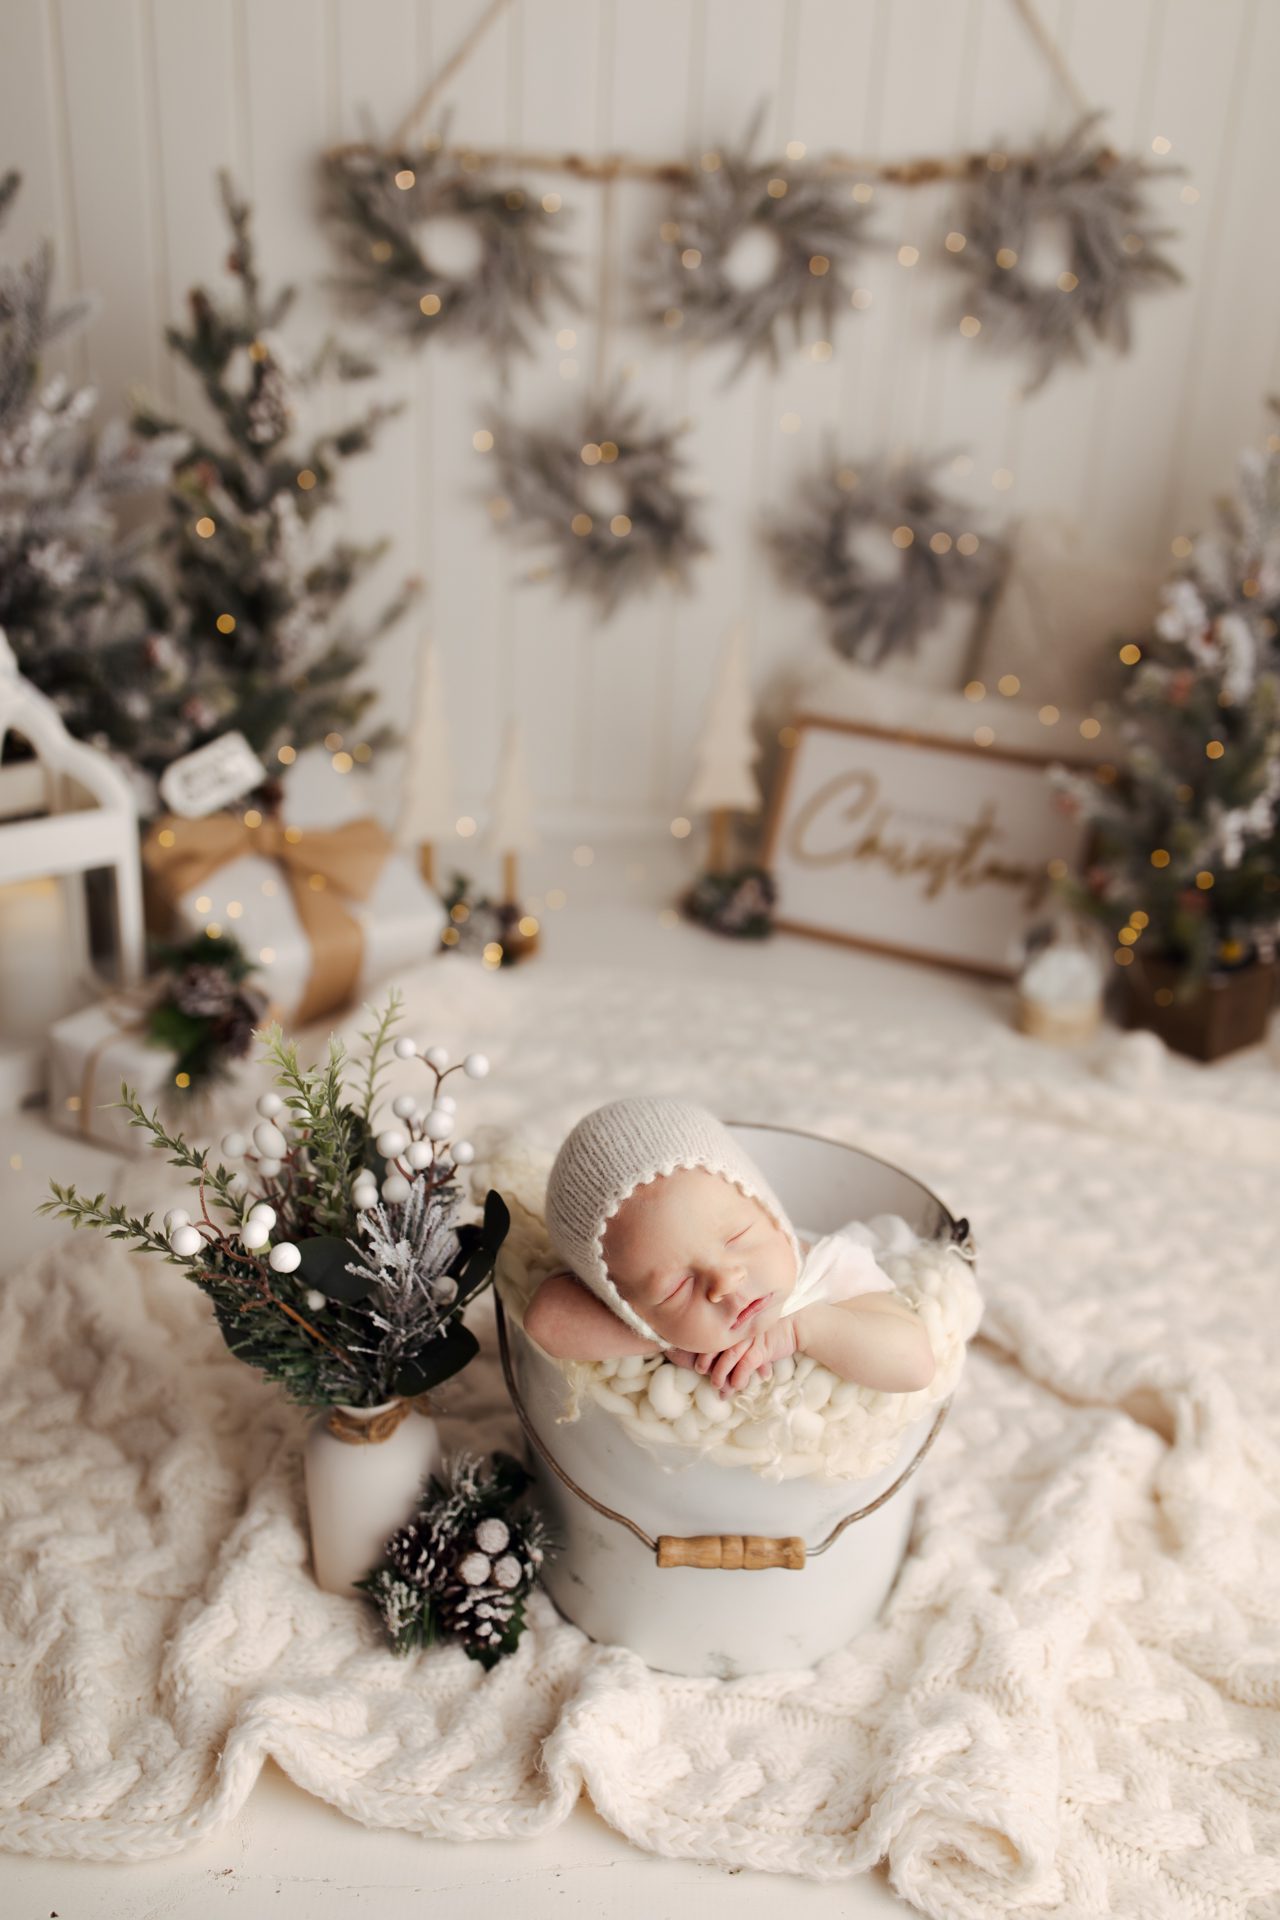 newborn baby Christmas photo set up